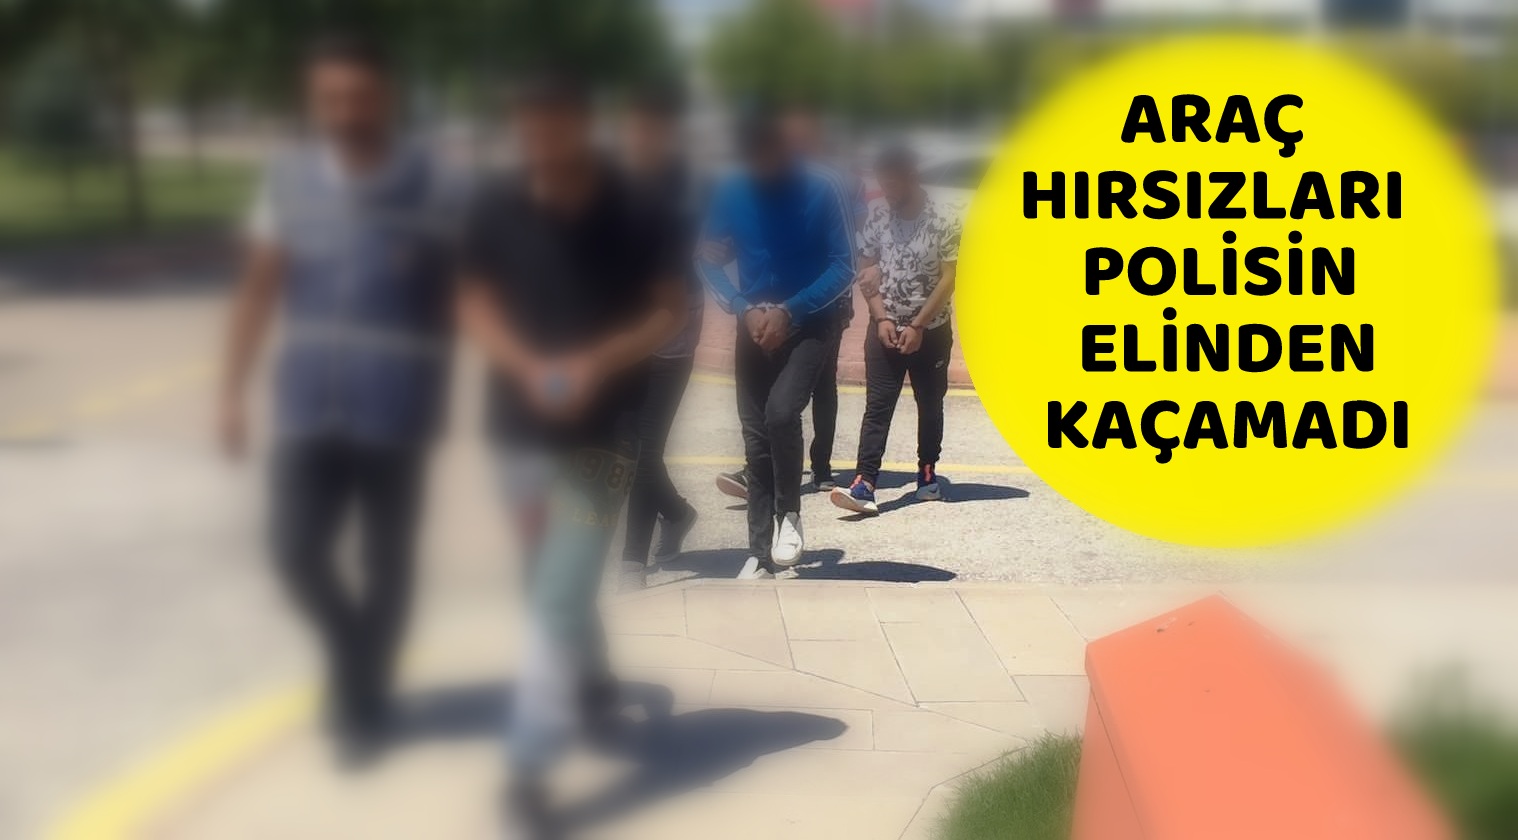 ARAÇ HIRSIZLARI POLİSİN ELİNDEN KAÇAMADI